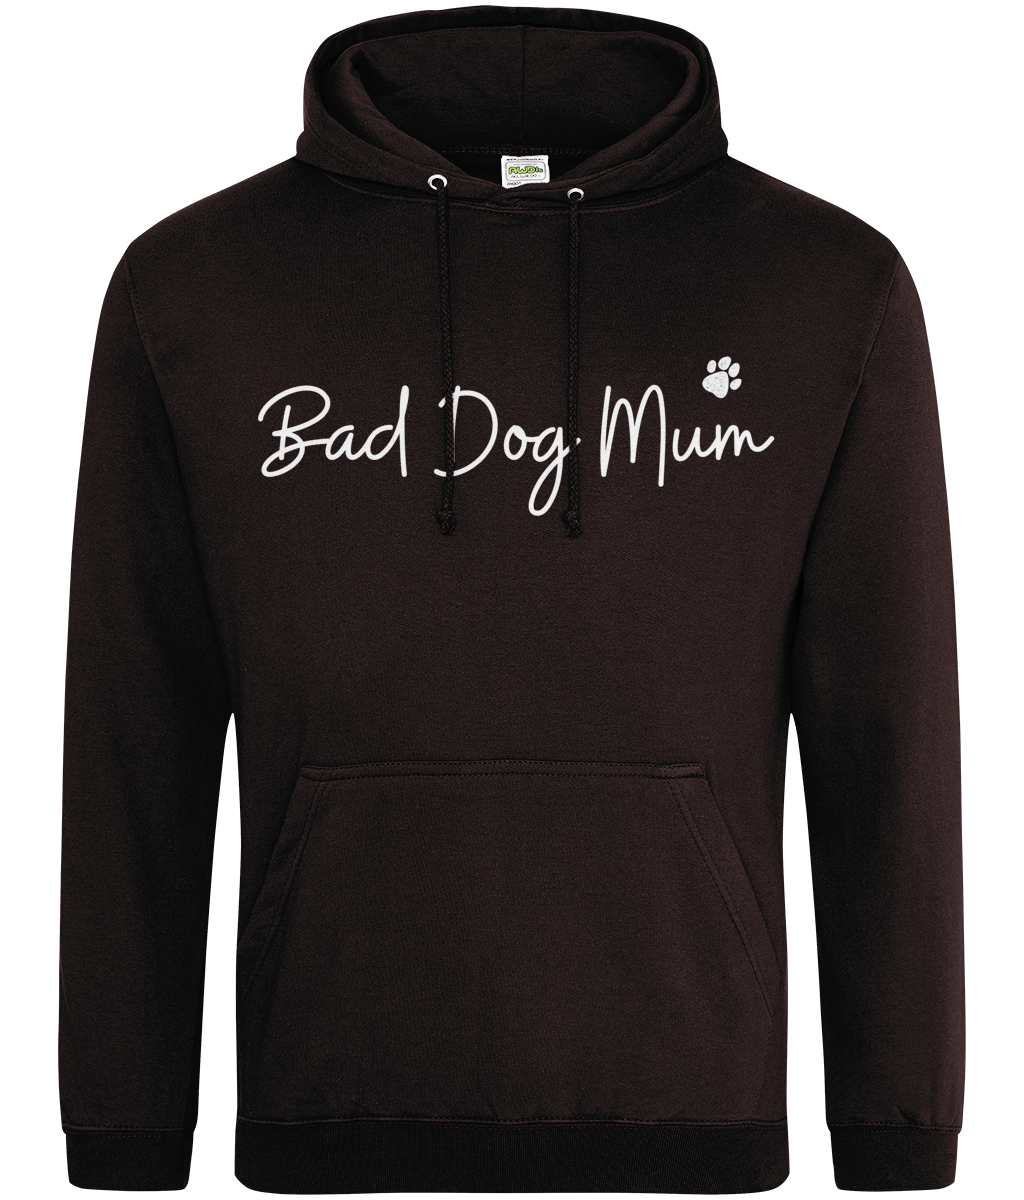 Bad Dog Mum- White Text